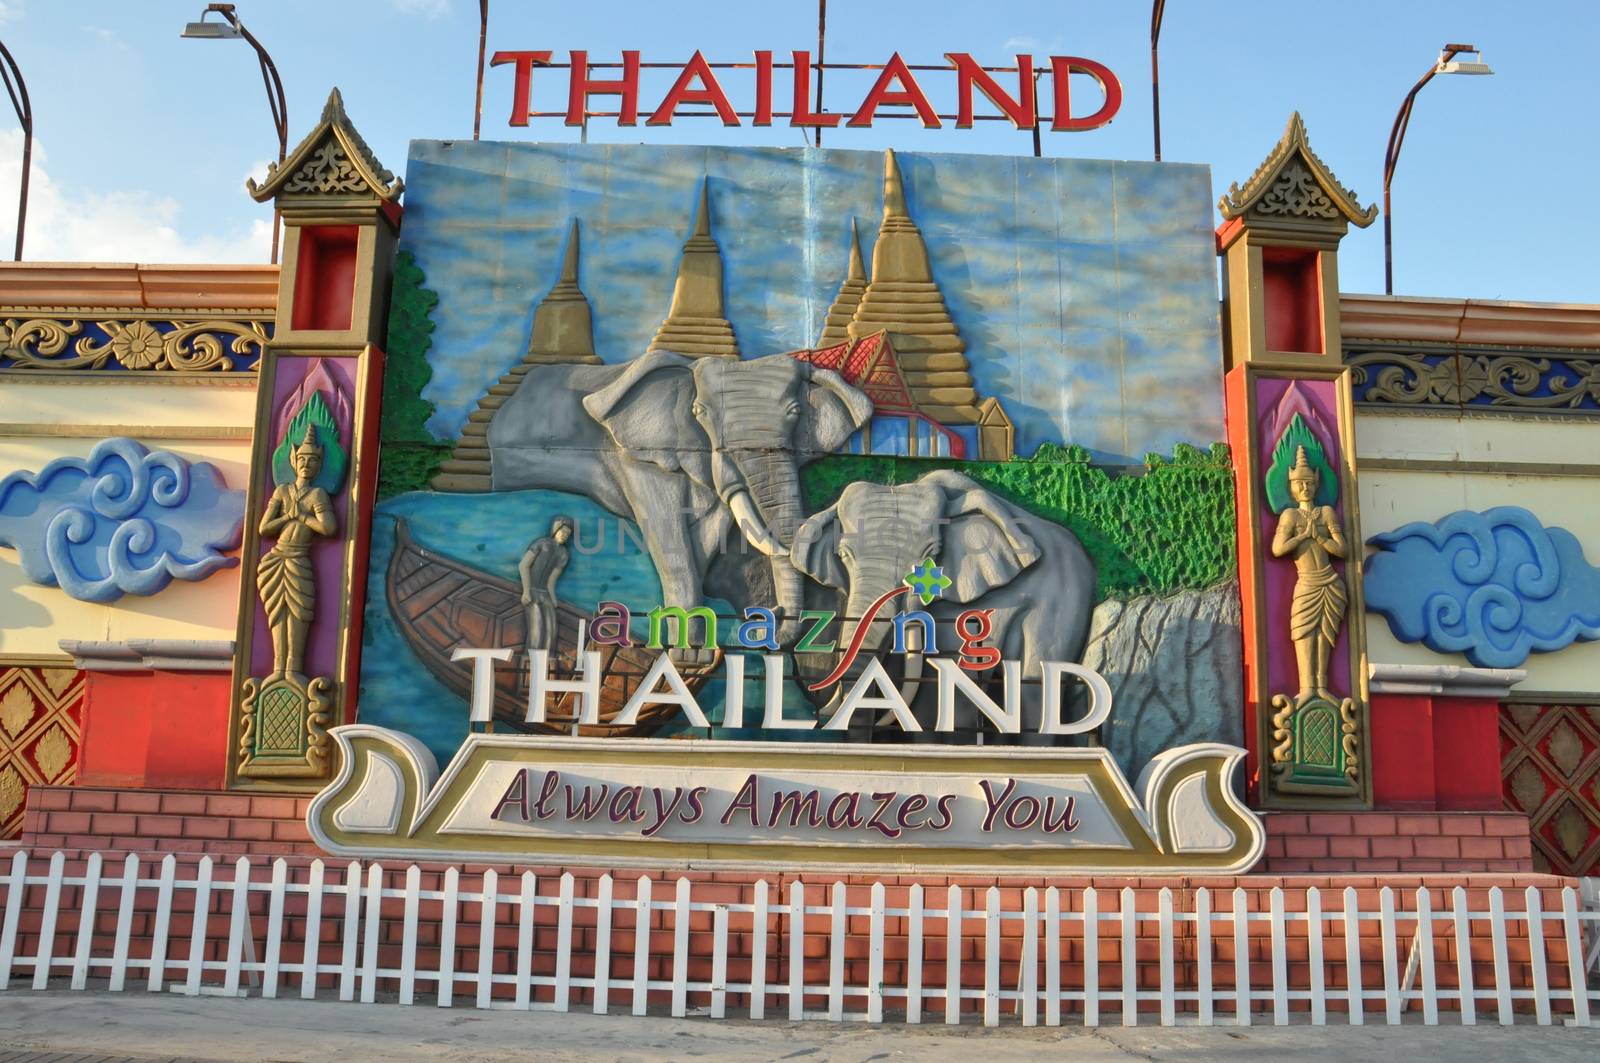 Thailand pavilion at Global Village in Dubai, UAE by sainaniritu